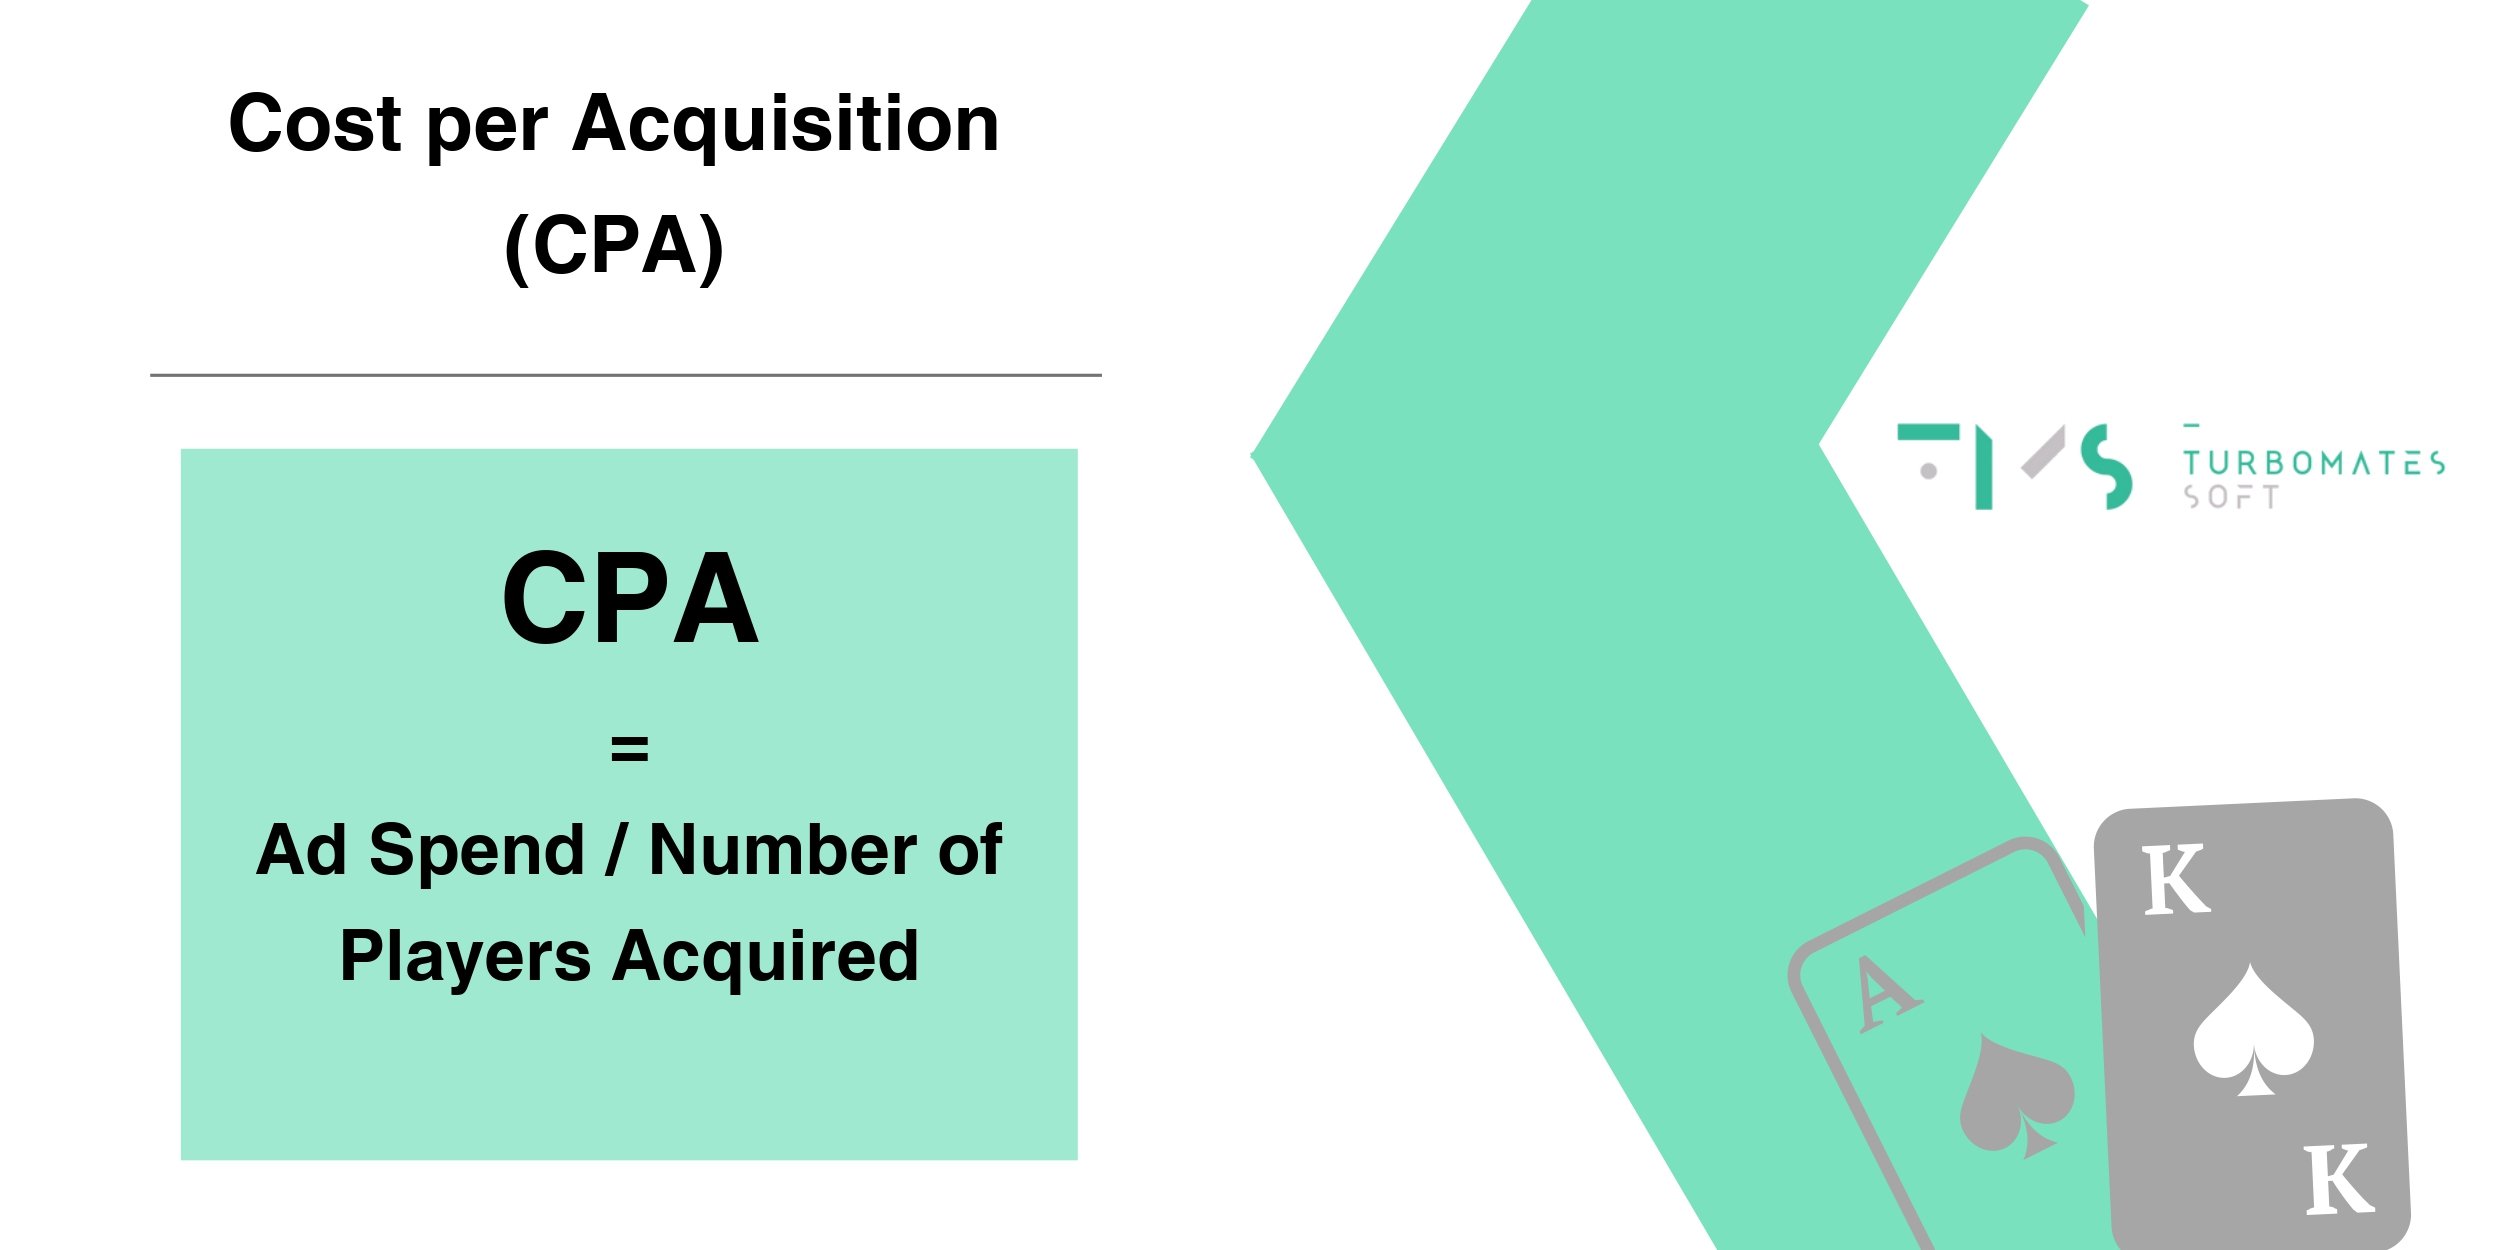 Cost per Acquisition (CPA) formula